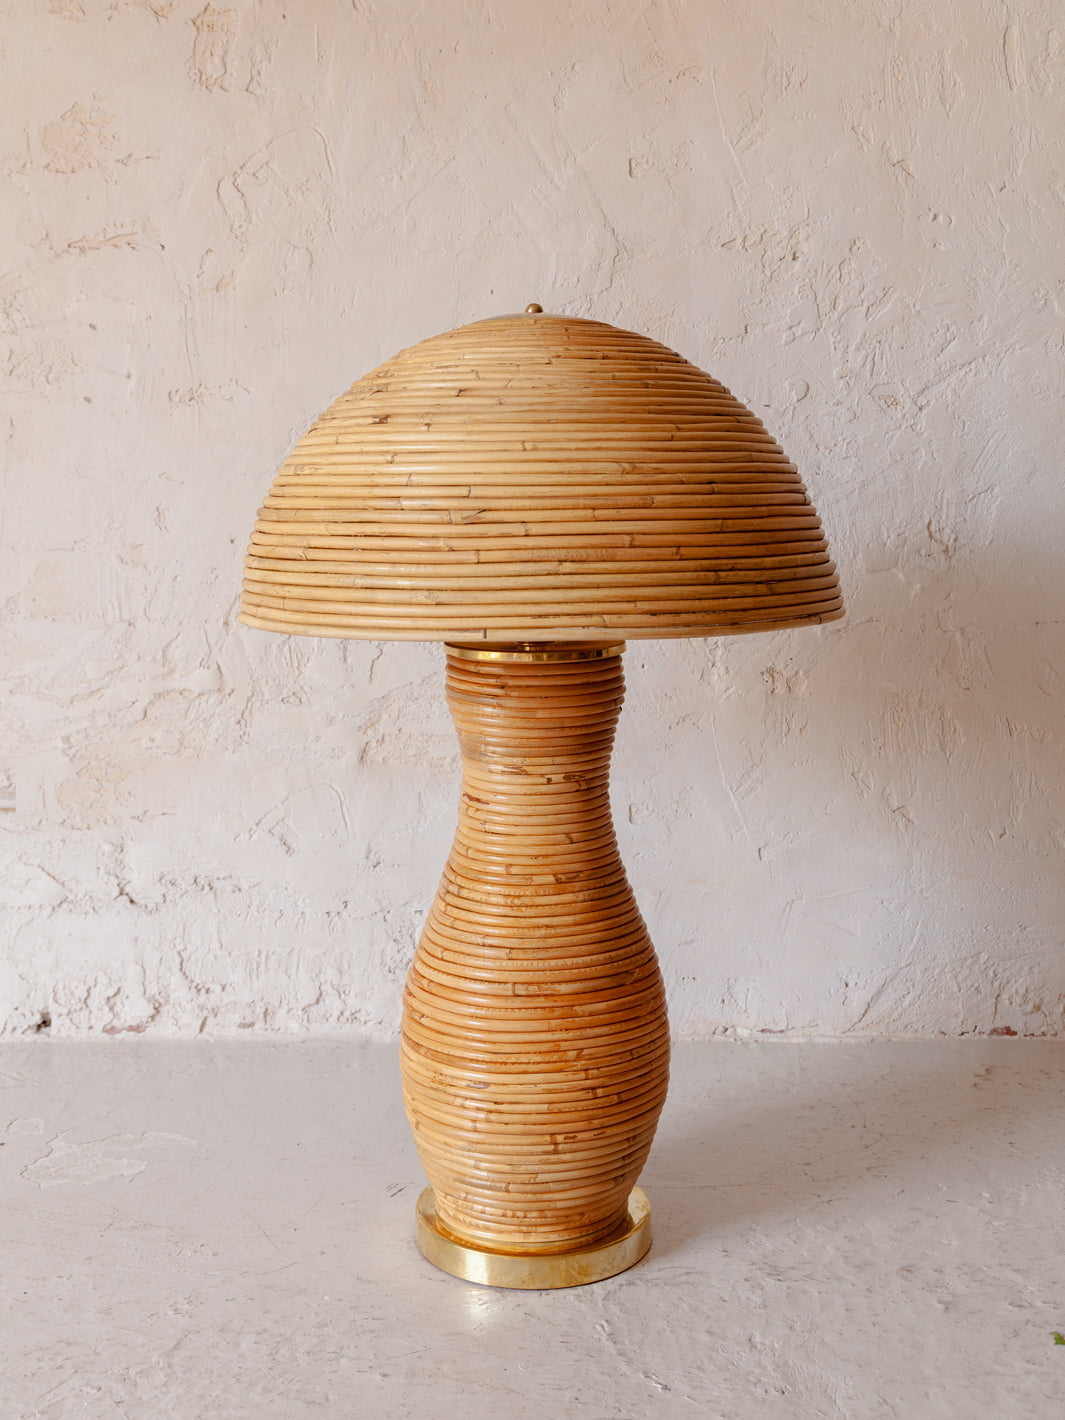 Italian handmade bamboo lamp